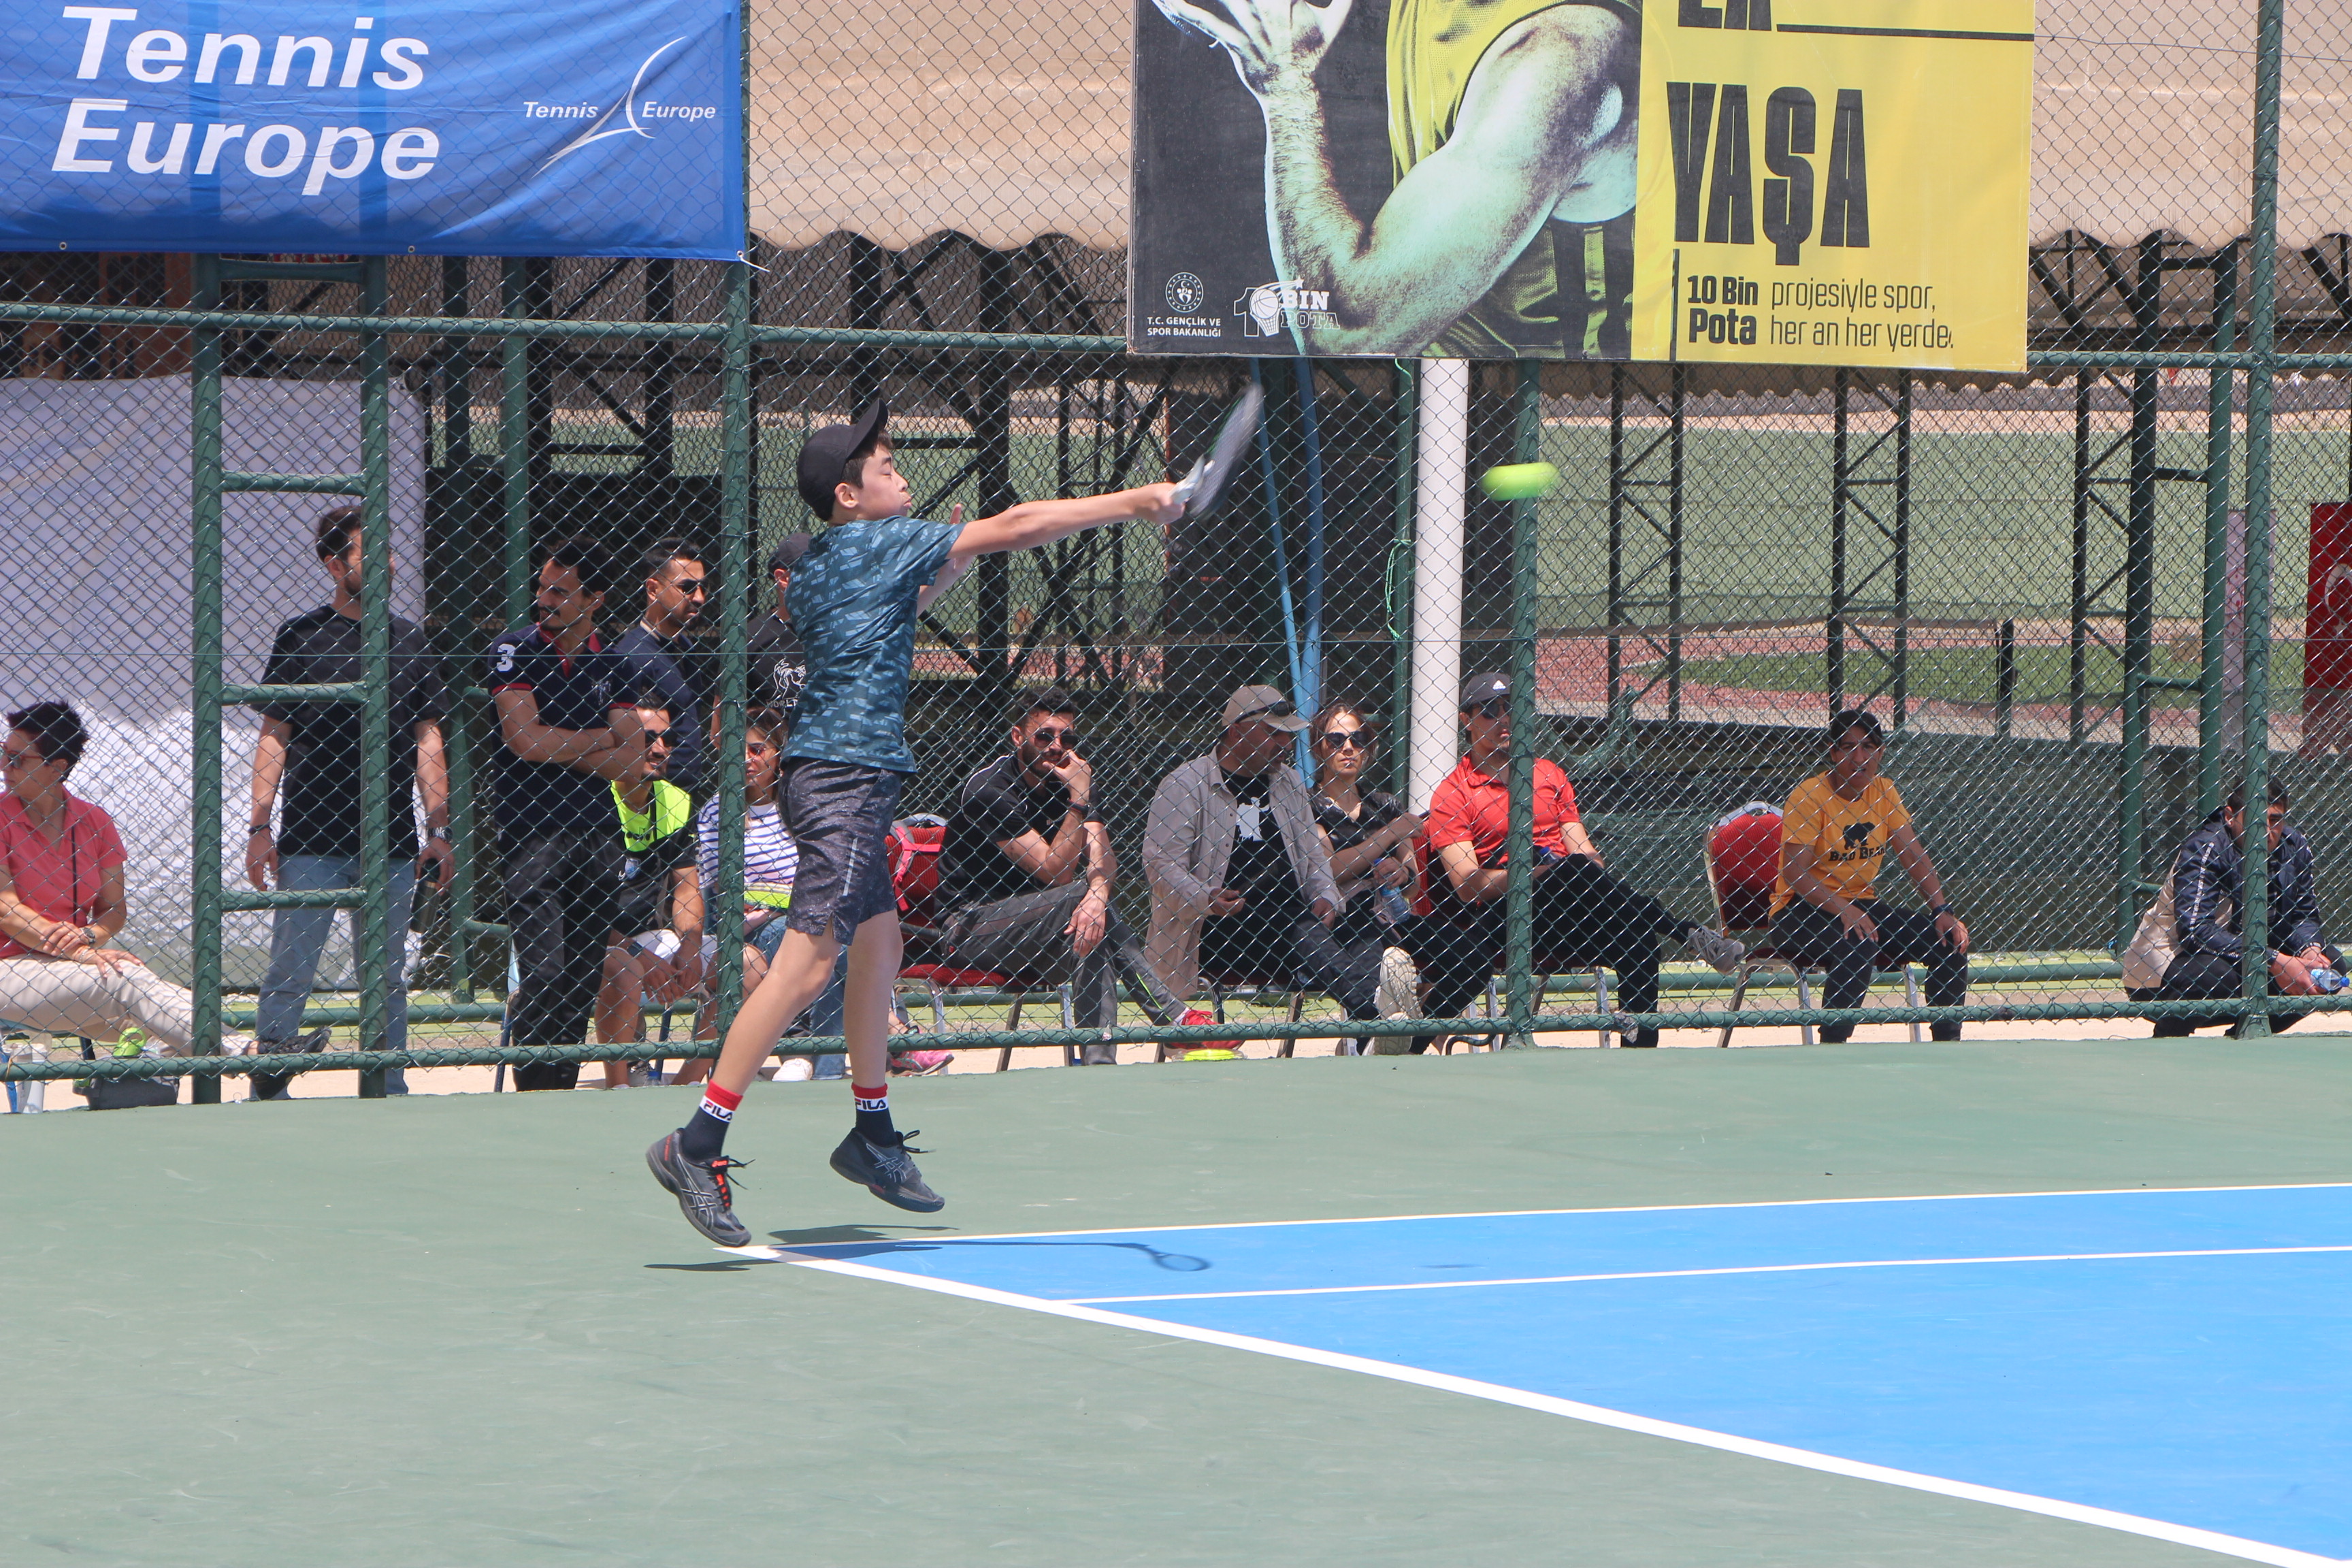 Cudi Cup Uluslararası Tenis Turnuvası Başladı